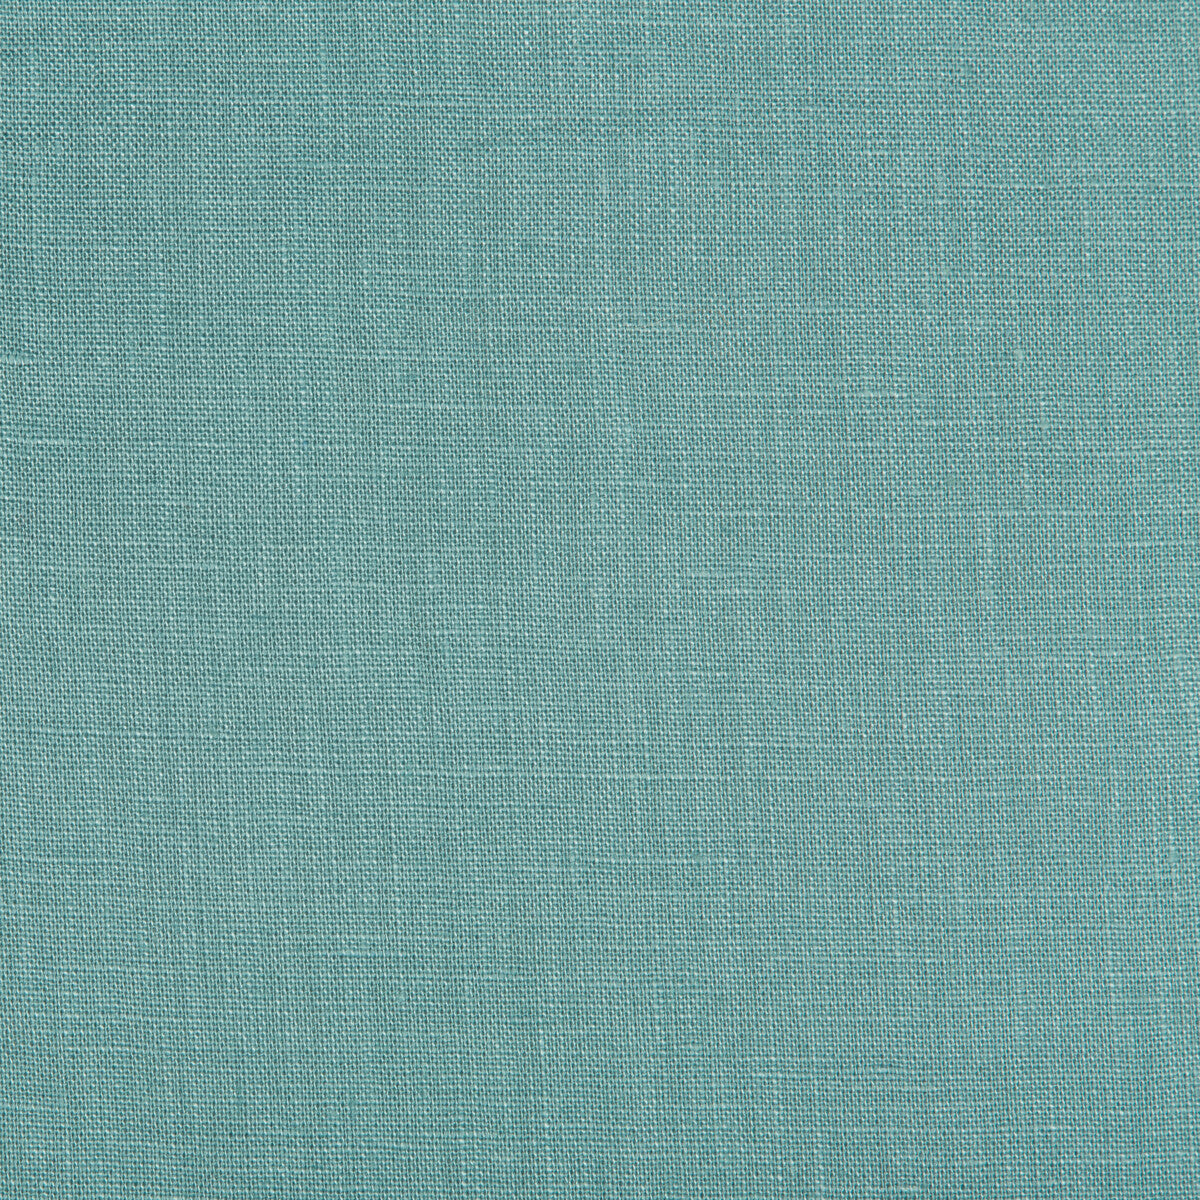 Kravet Basics fabric in 24570-35 color - pattern 24570.35.0 - by Kravet Basics